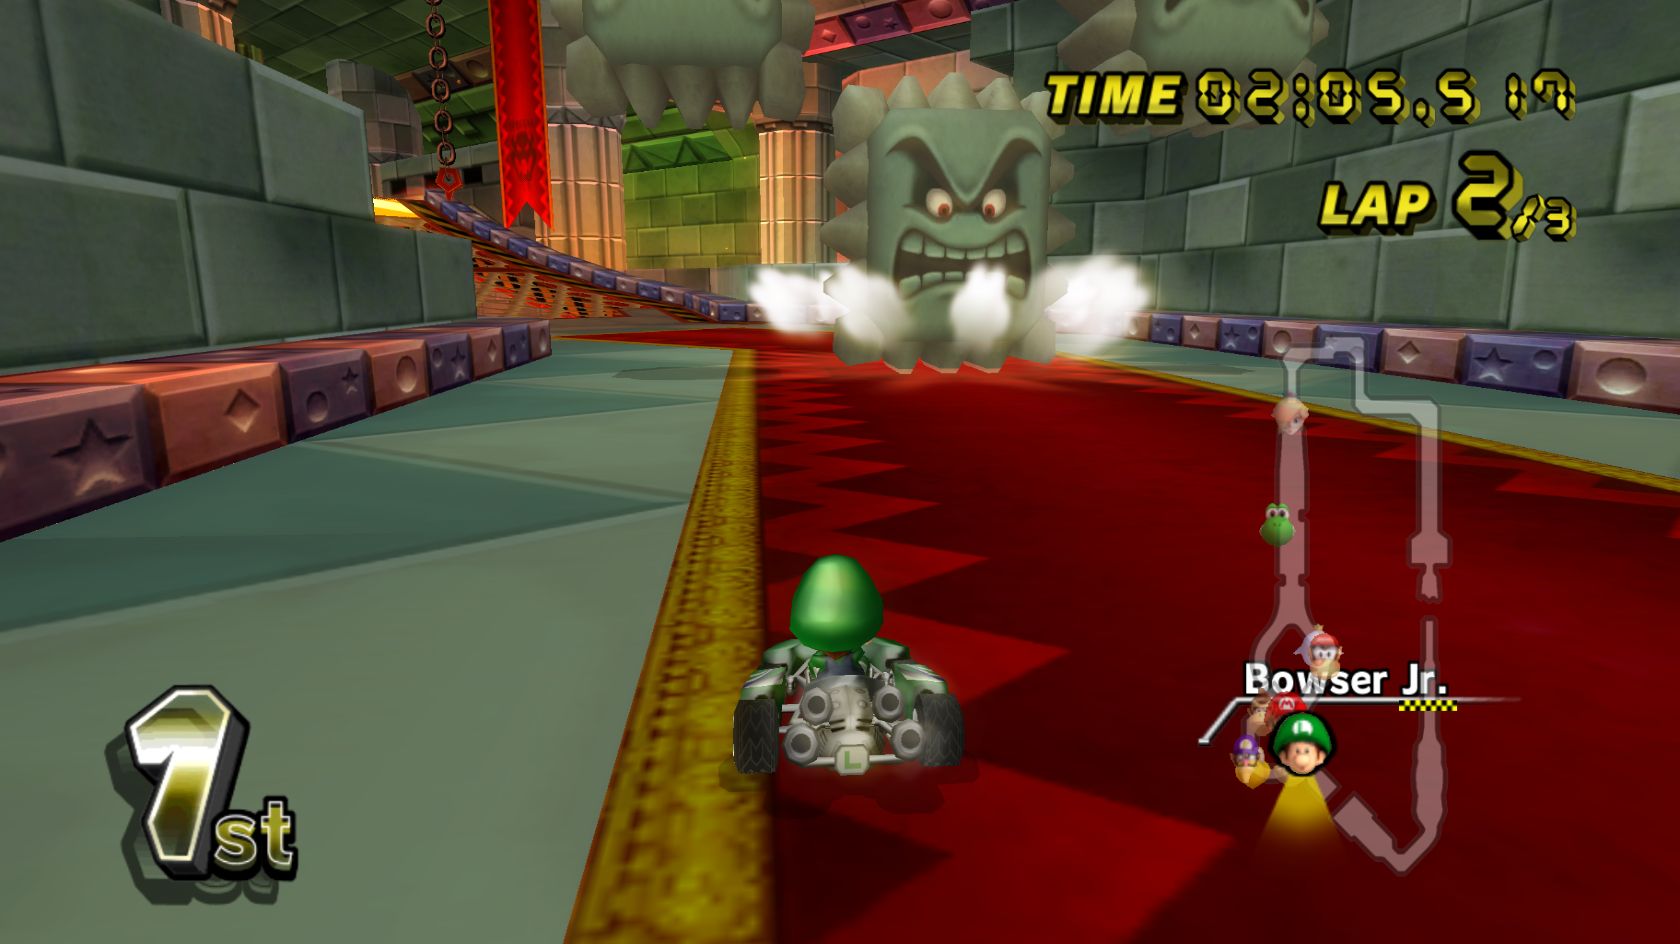 Baixe gratuitamente a imagem Mario Kart Wii, Mário, Videogame na área de trabalho do seu PC